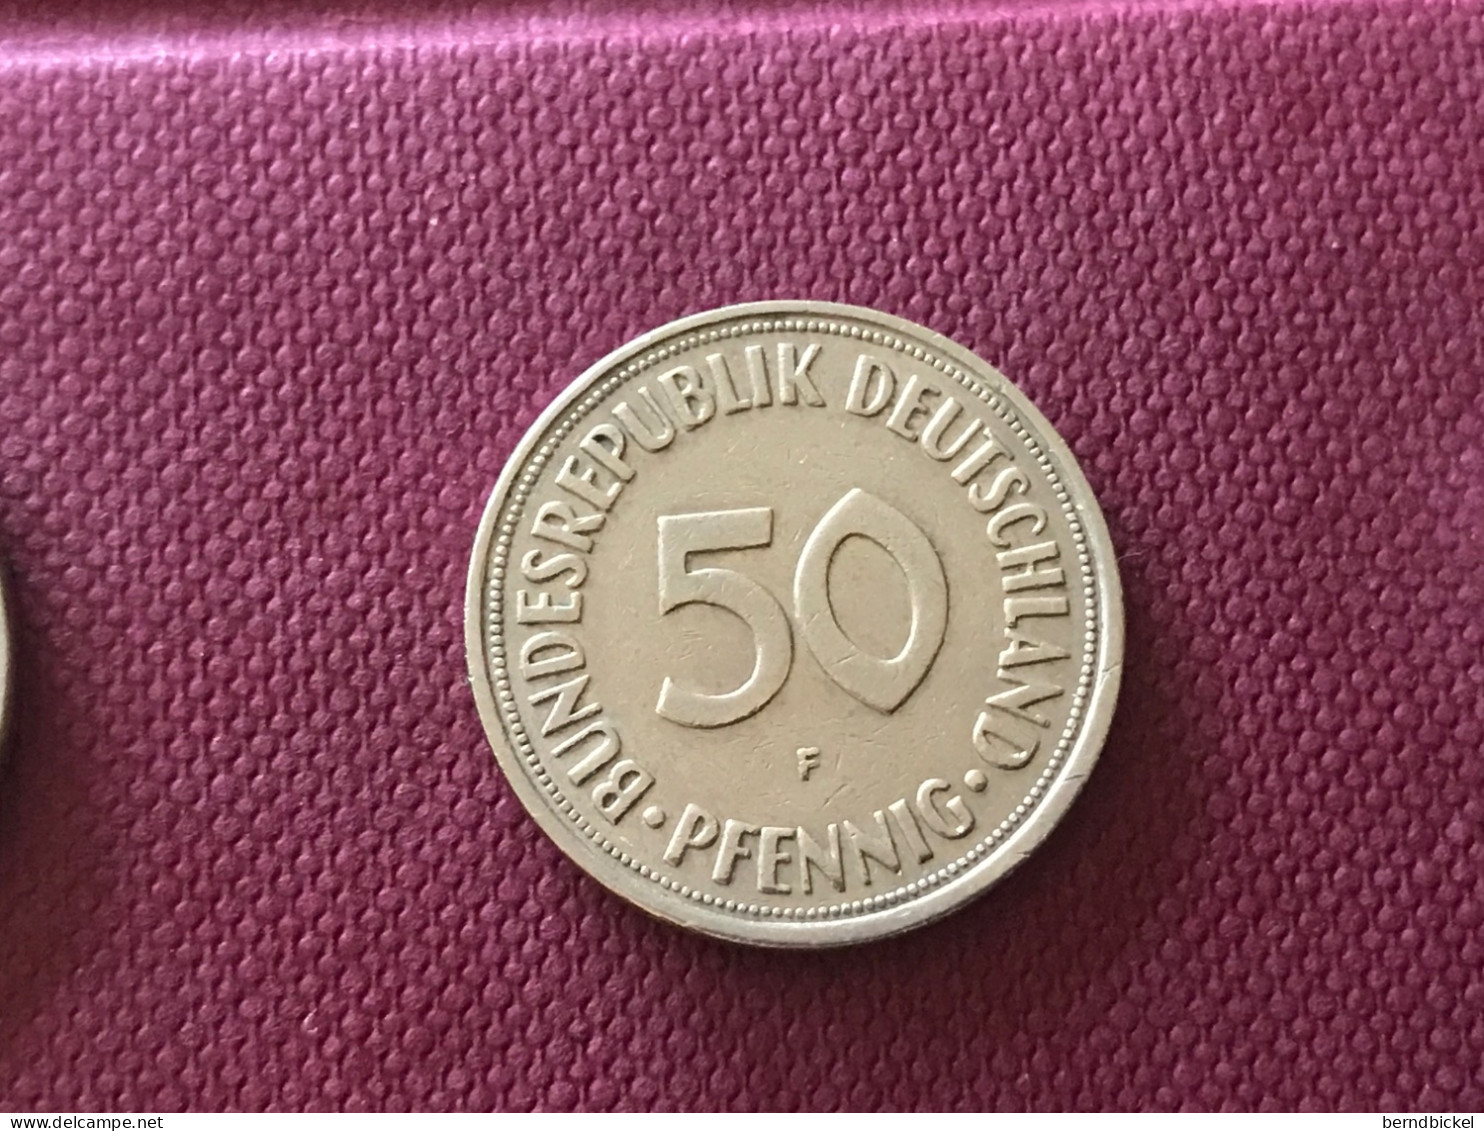 Münze Münzen Umlaufmünze Deutschland BRD 50 Pfennig 1950 Münzzeichen F - 50 Pfennig